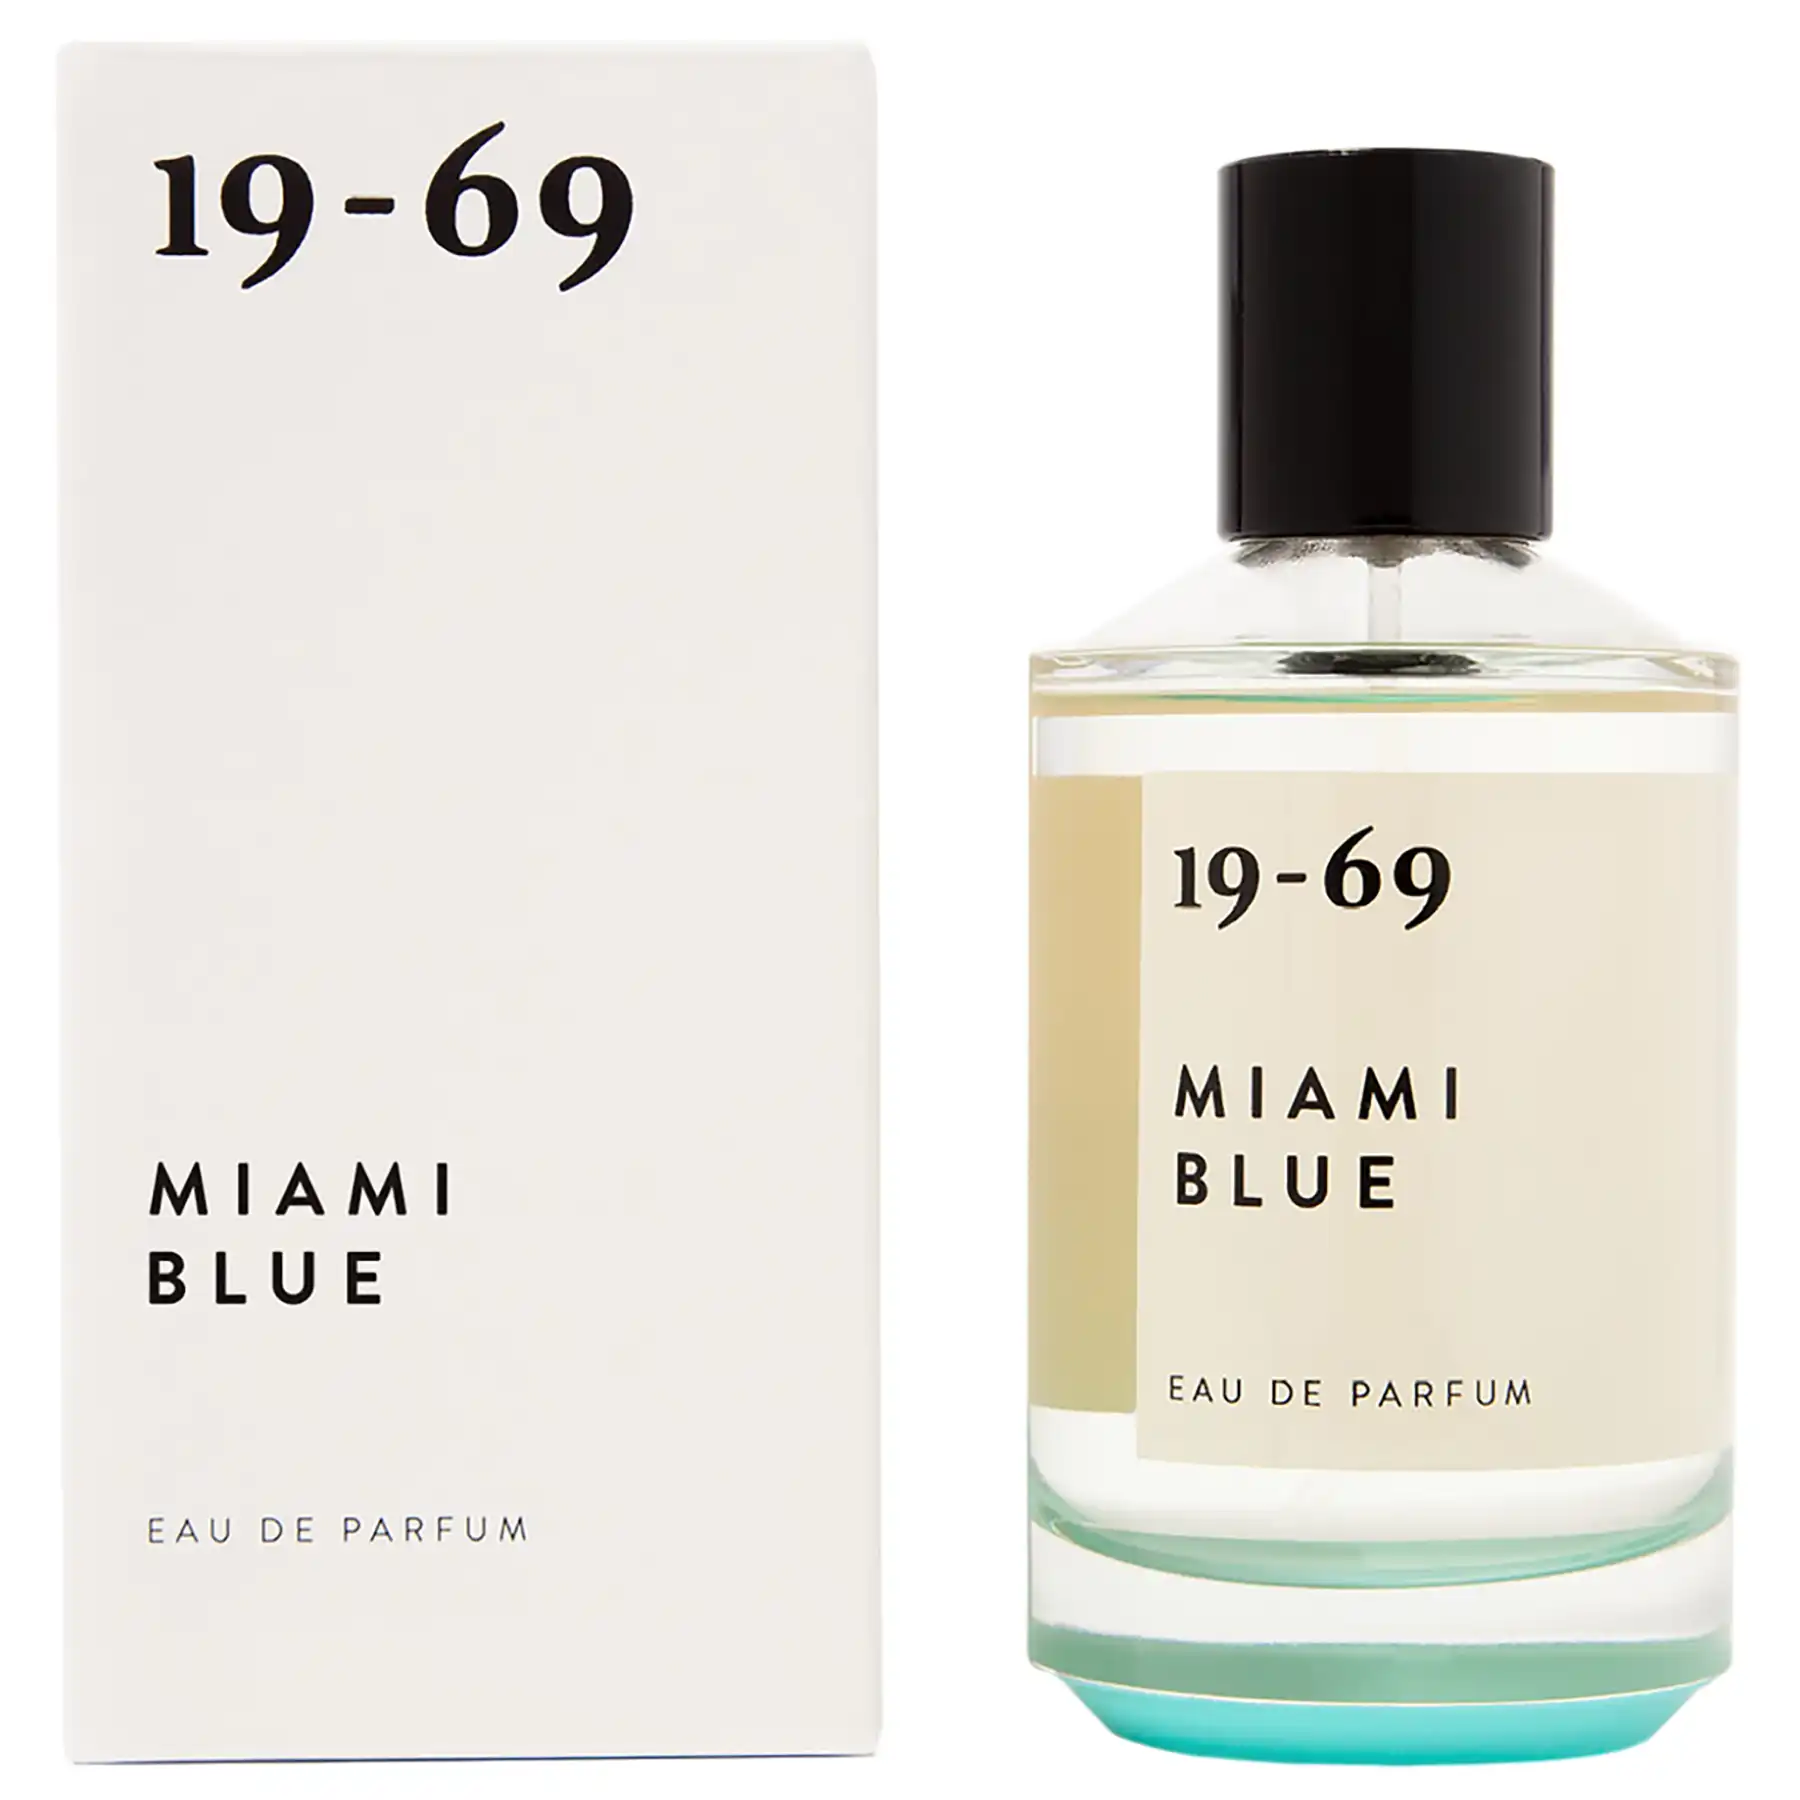 1969 Miami Blue Perfume